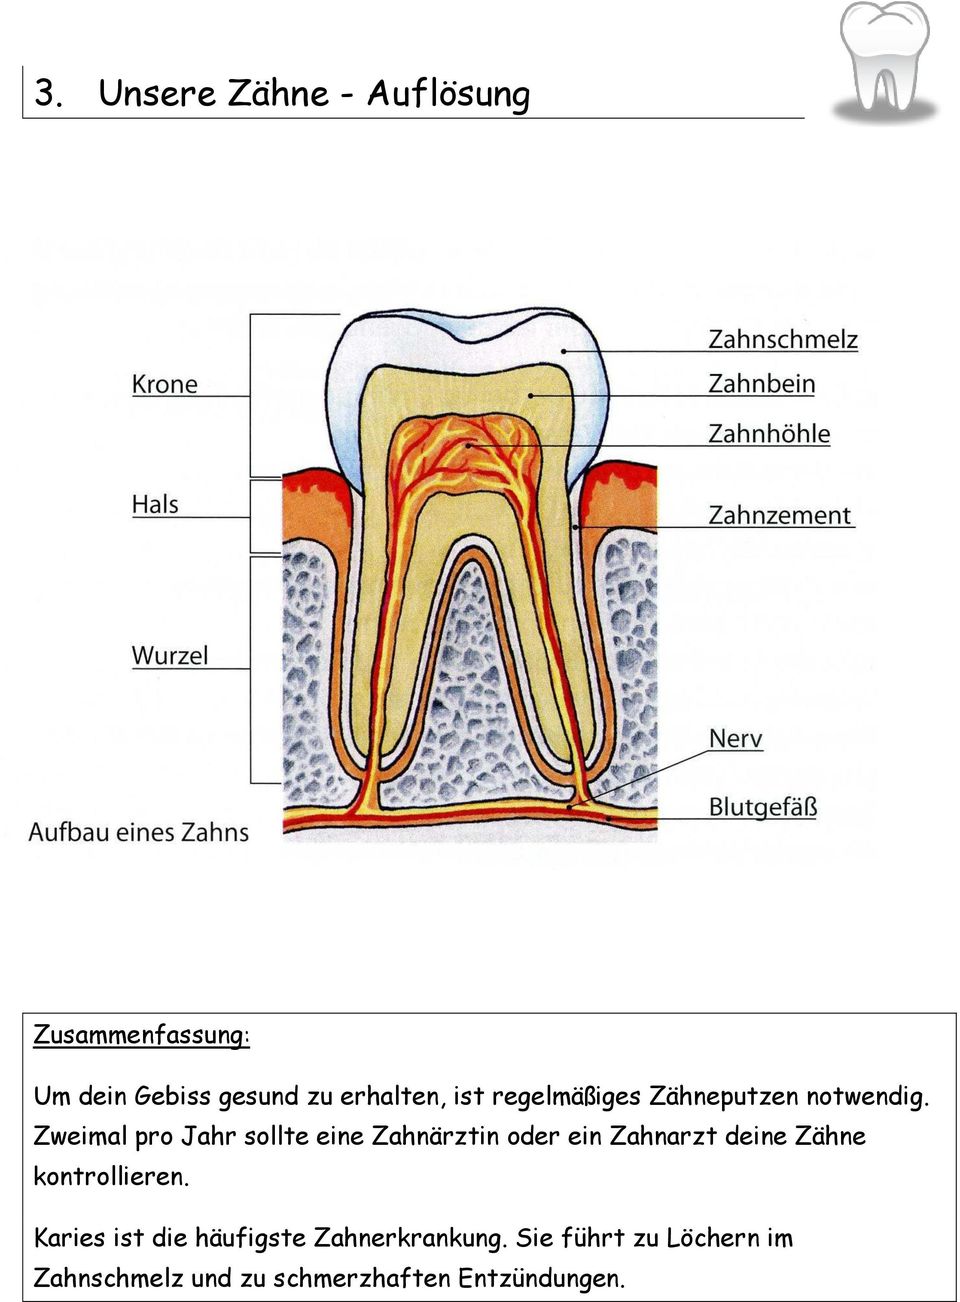 Zweimal pro Jahr sollte eine Zahnärztin oder ein Zahnarzt deine Zähne